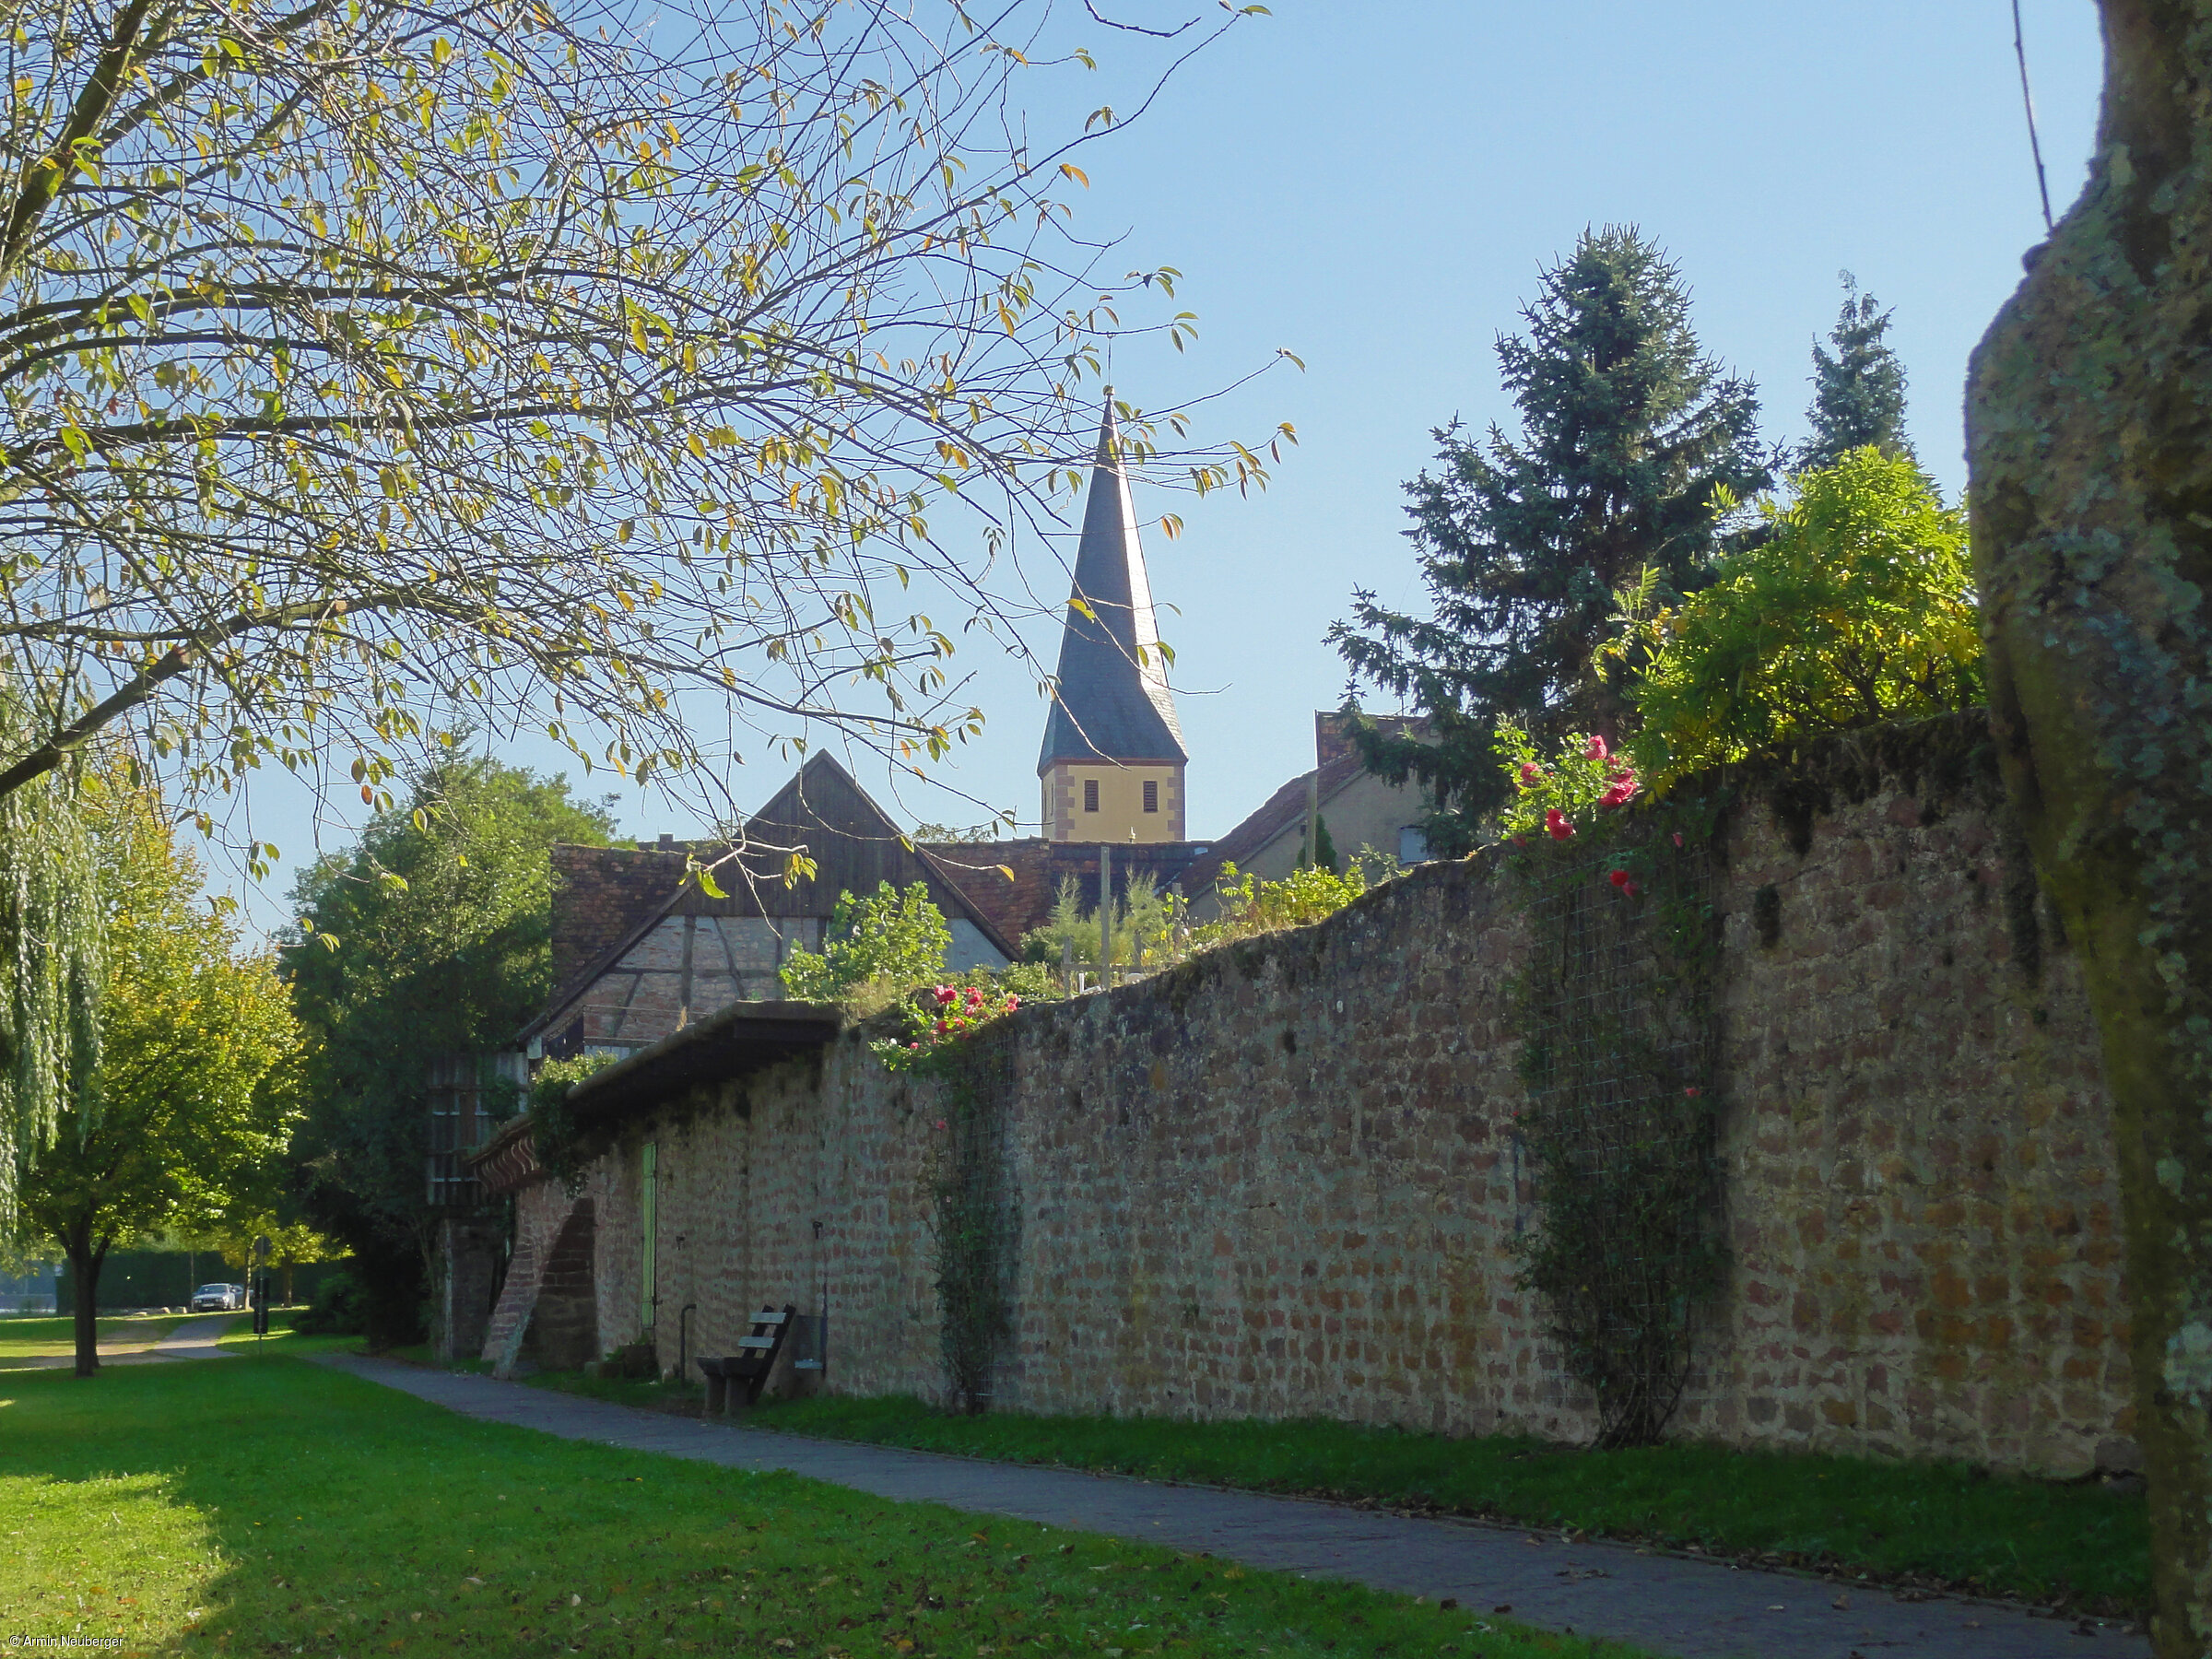 Ortsmauer mit Kirche (Kleinheubach, Spessart-Mainland)